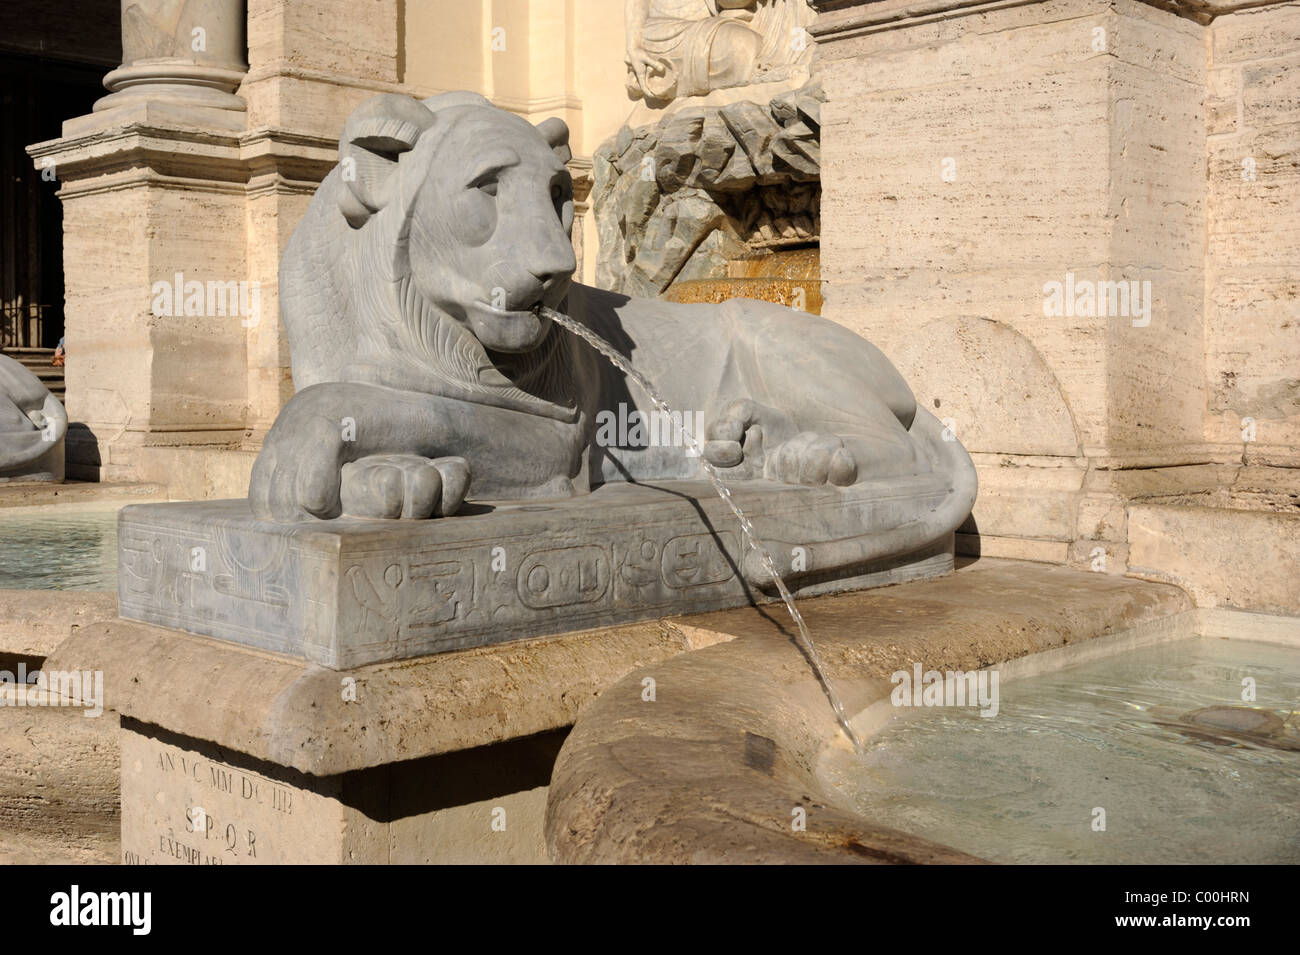 Italy, Rome, fontana dell'Acqua Felice, Moses fountain Stock Photo